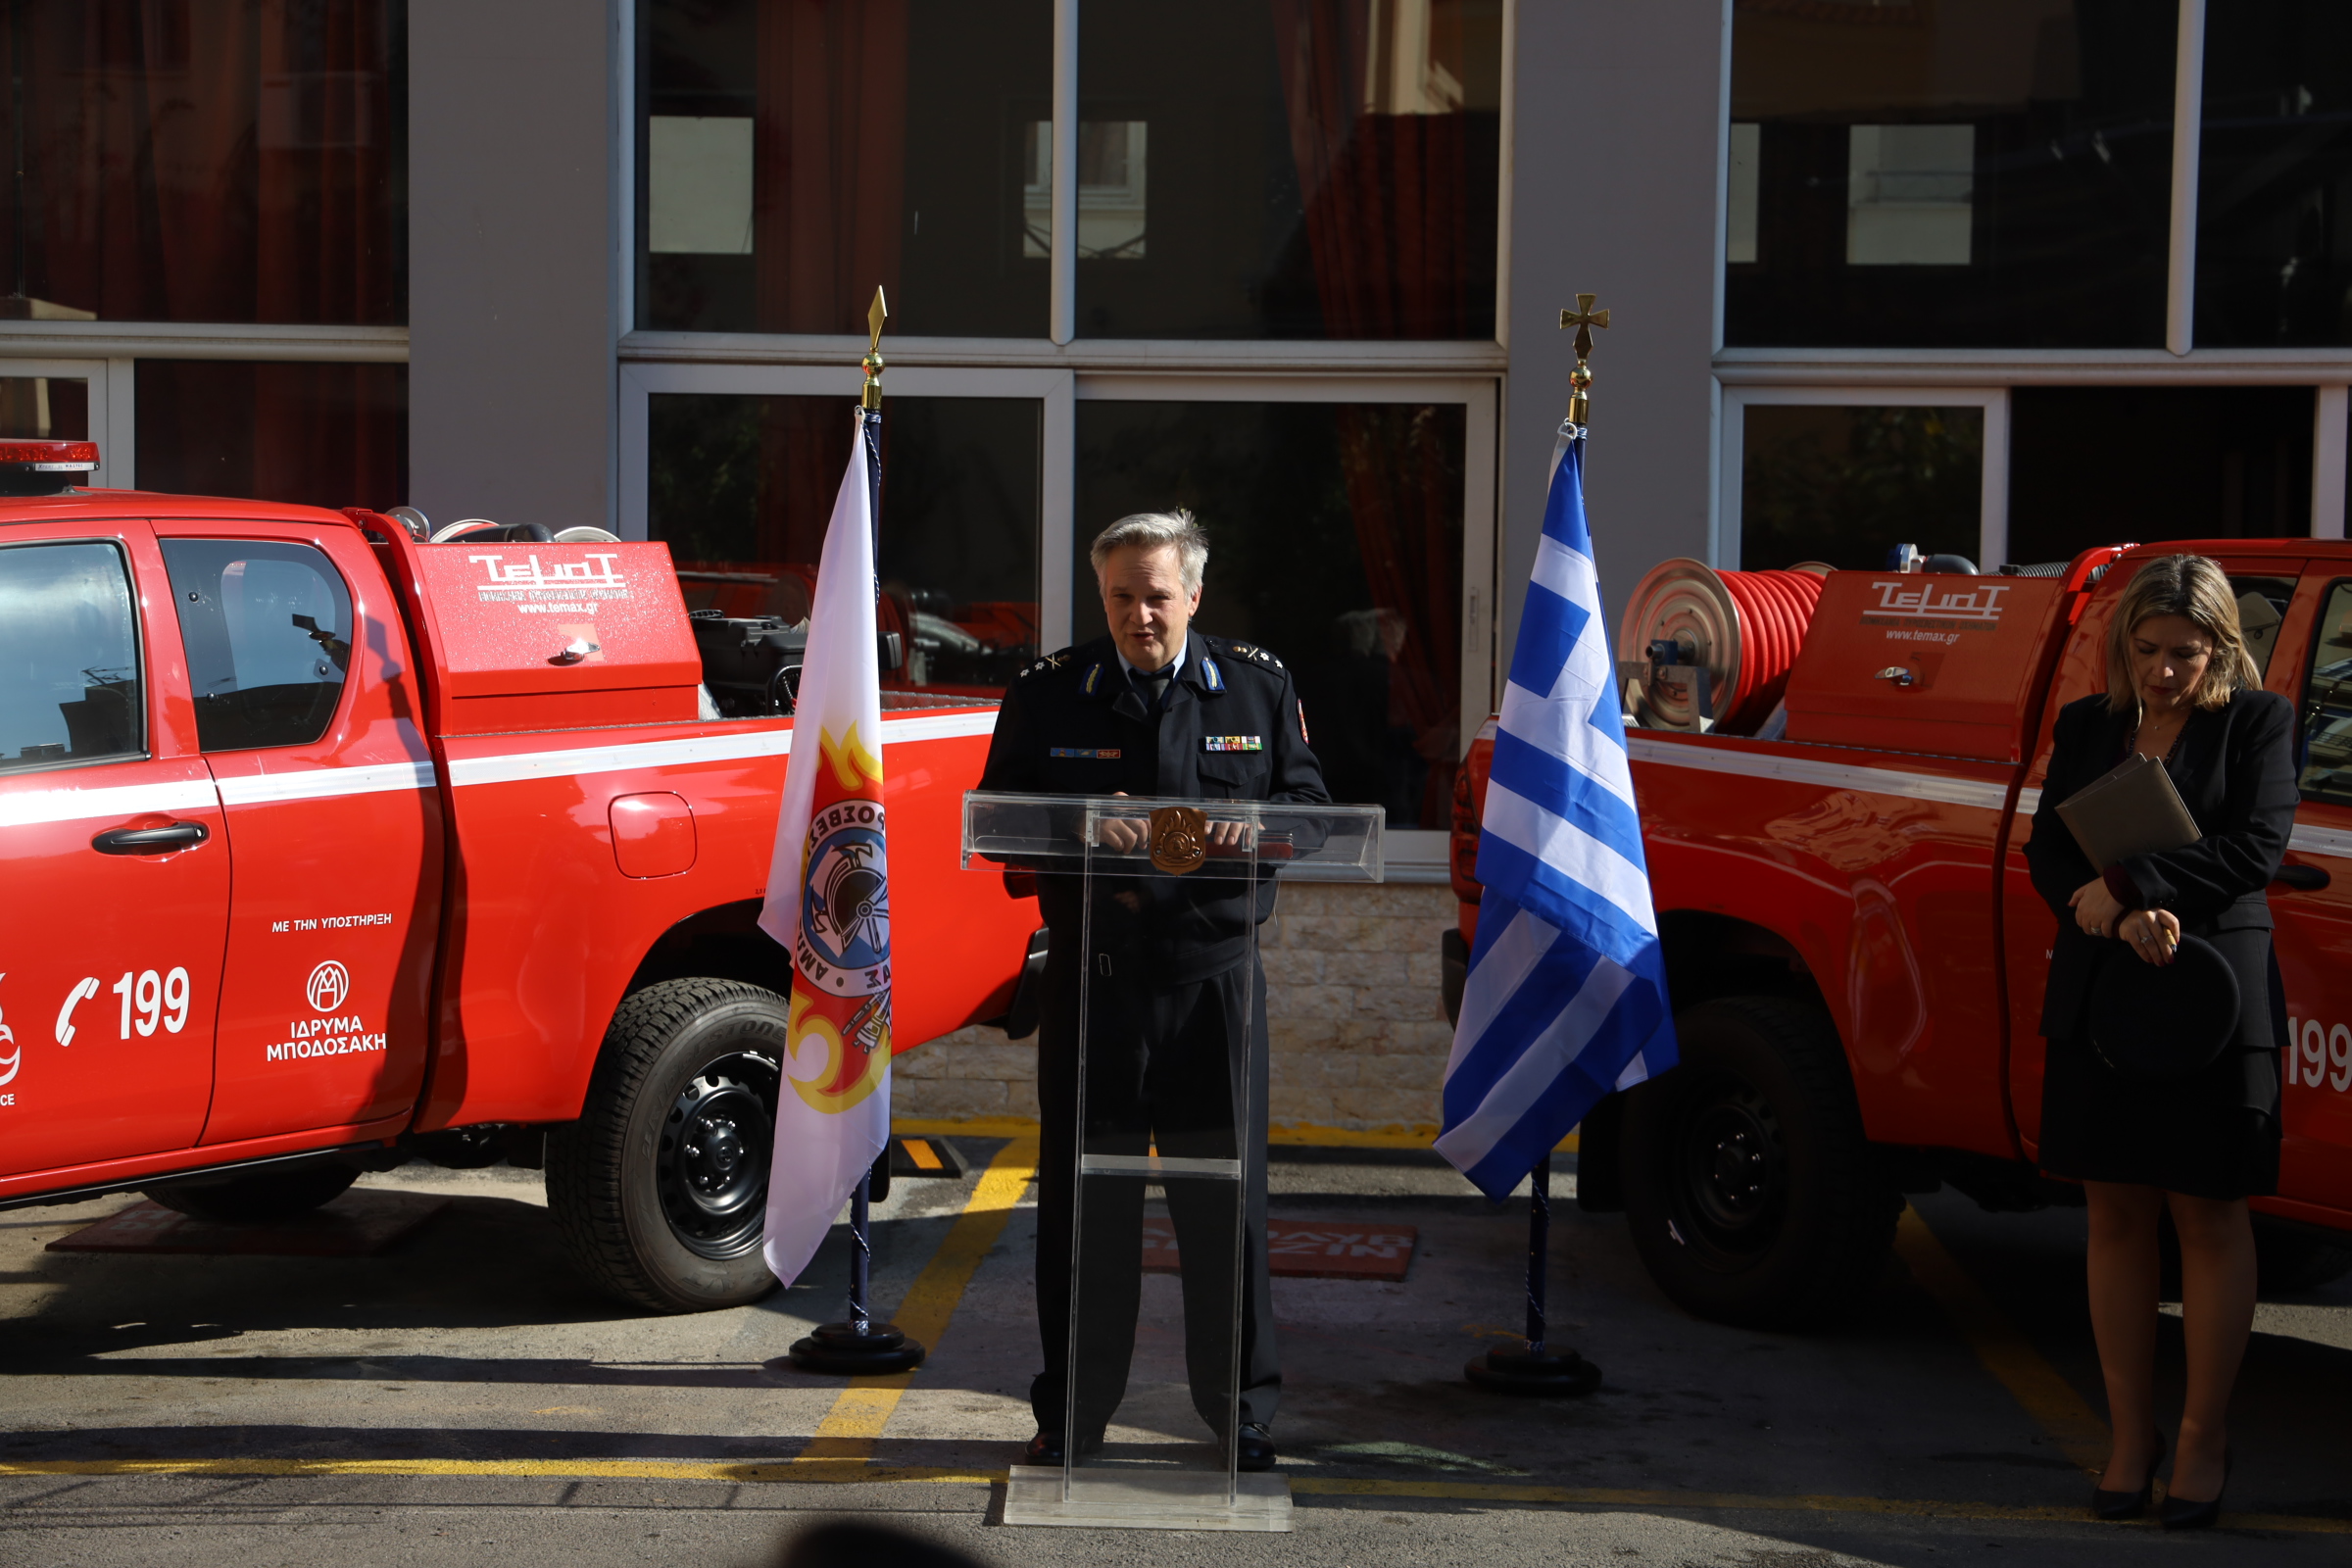 Δωρεά δύο Πυροσβεστικών Οχημάτων από την Coca-Cola στην Ελλάδα, σε συνεργασία με το Ίδρυμα Μποδοσάκη, στο Πυροσβεστικό Σώμα